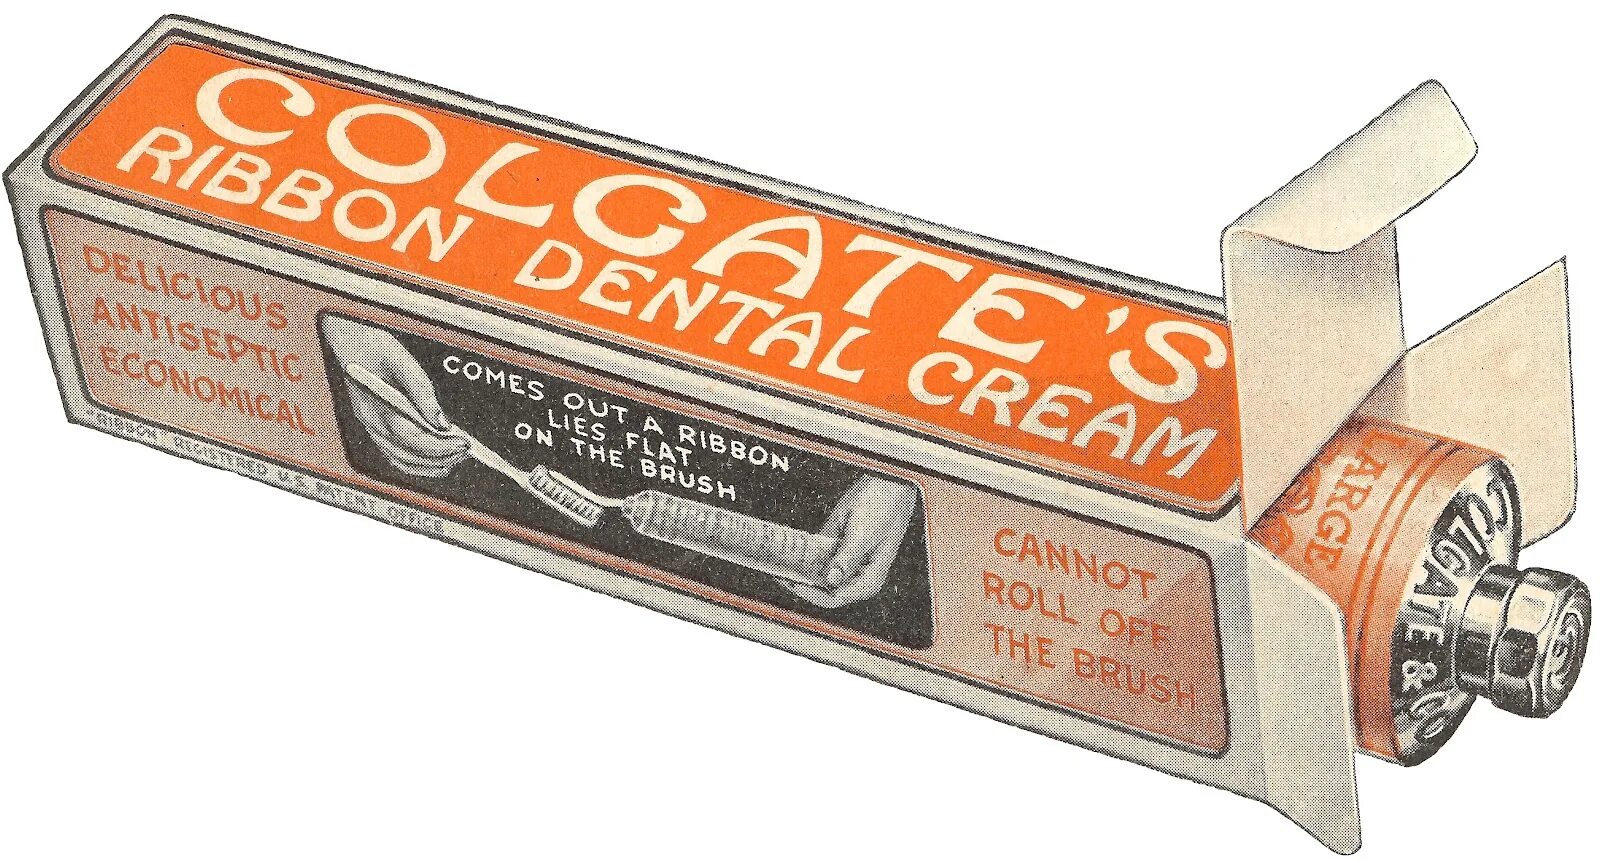 Фирма тюбик. Первая зубная паста Colgate. 1873 Год Colgate паста. Первая зубная паста Колгейт в баночке. Зубная паста Колгейт в 1873.